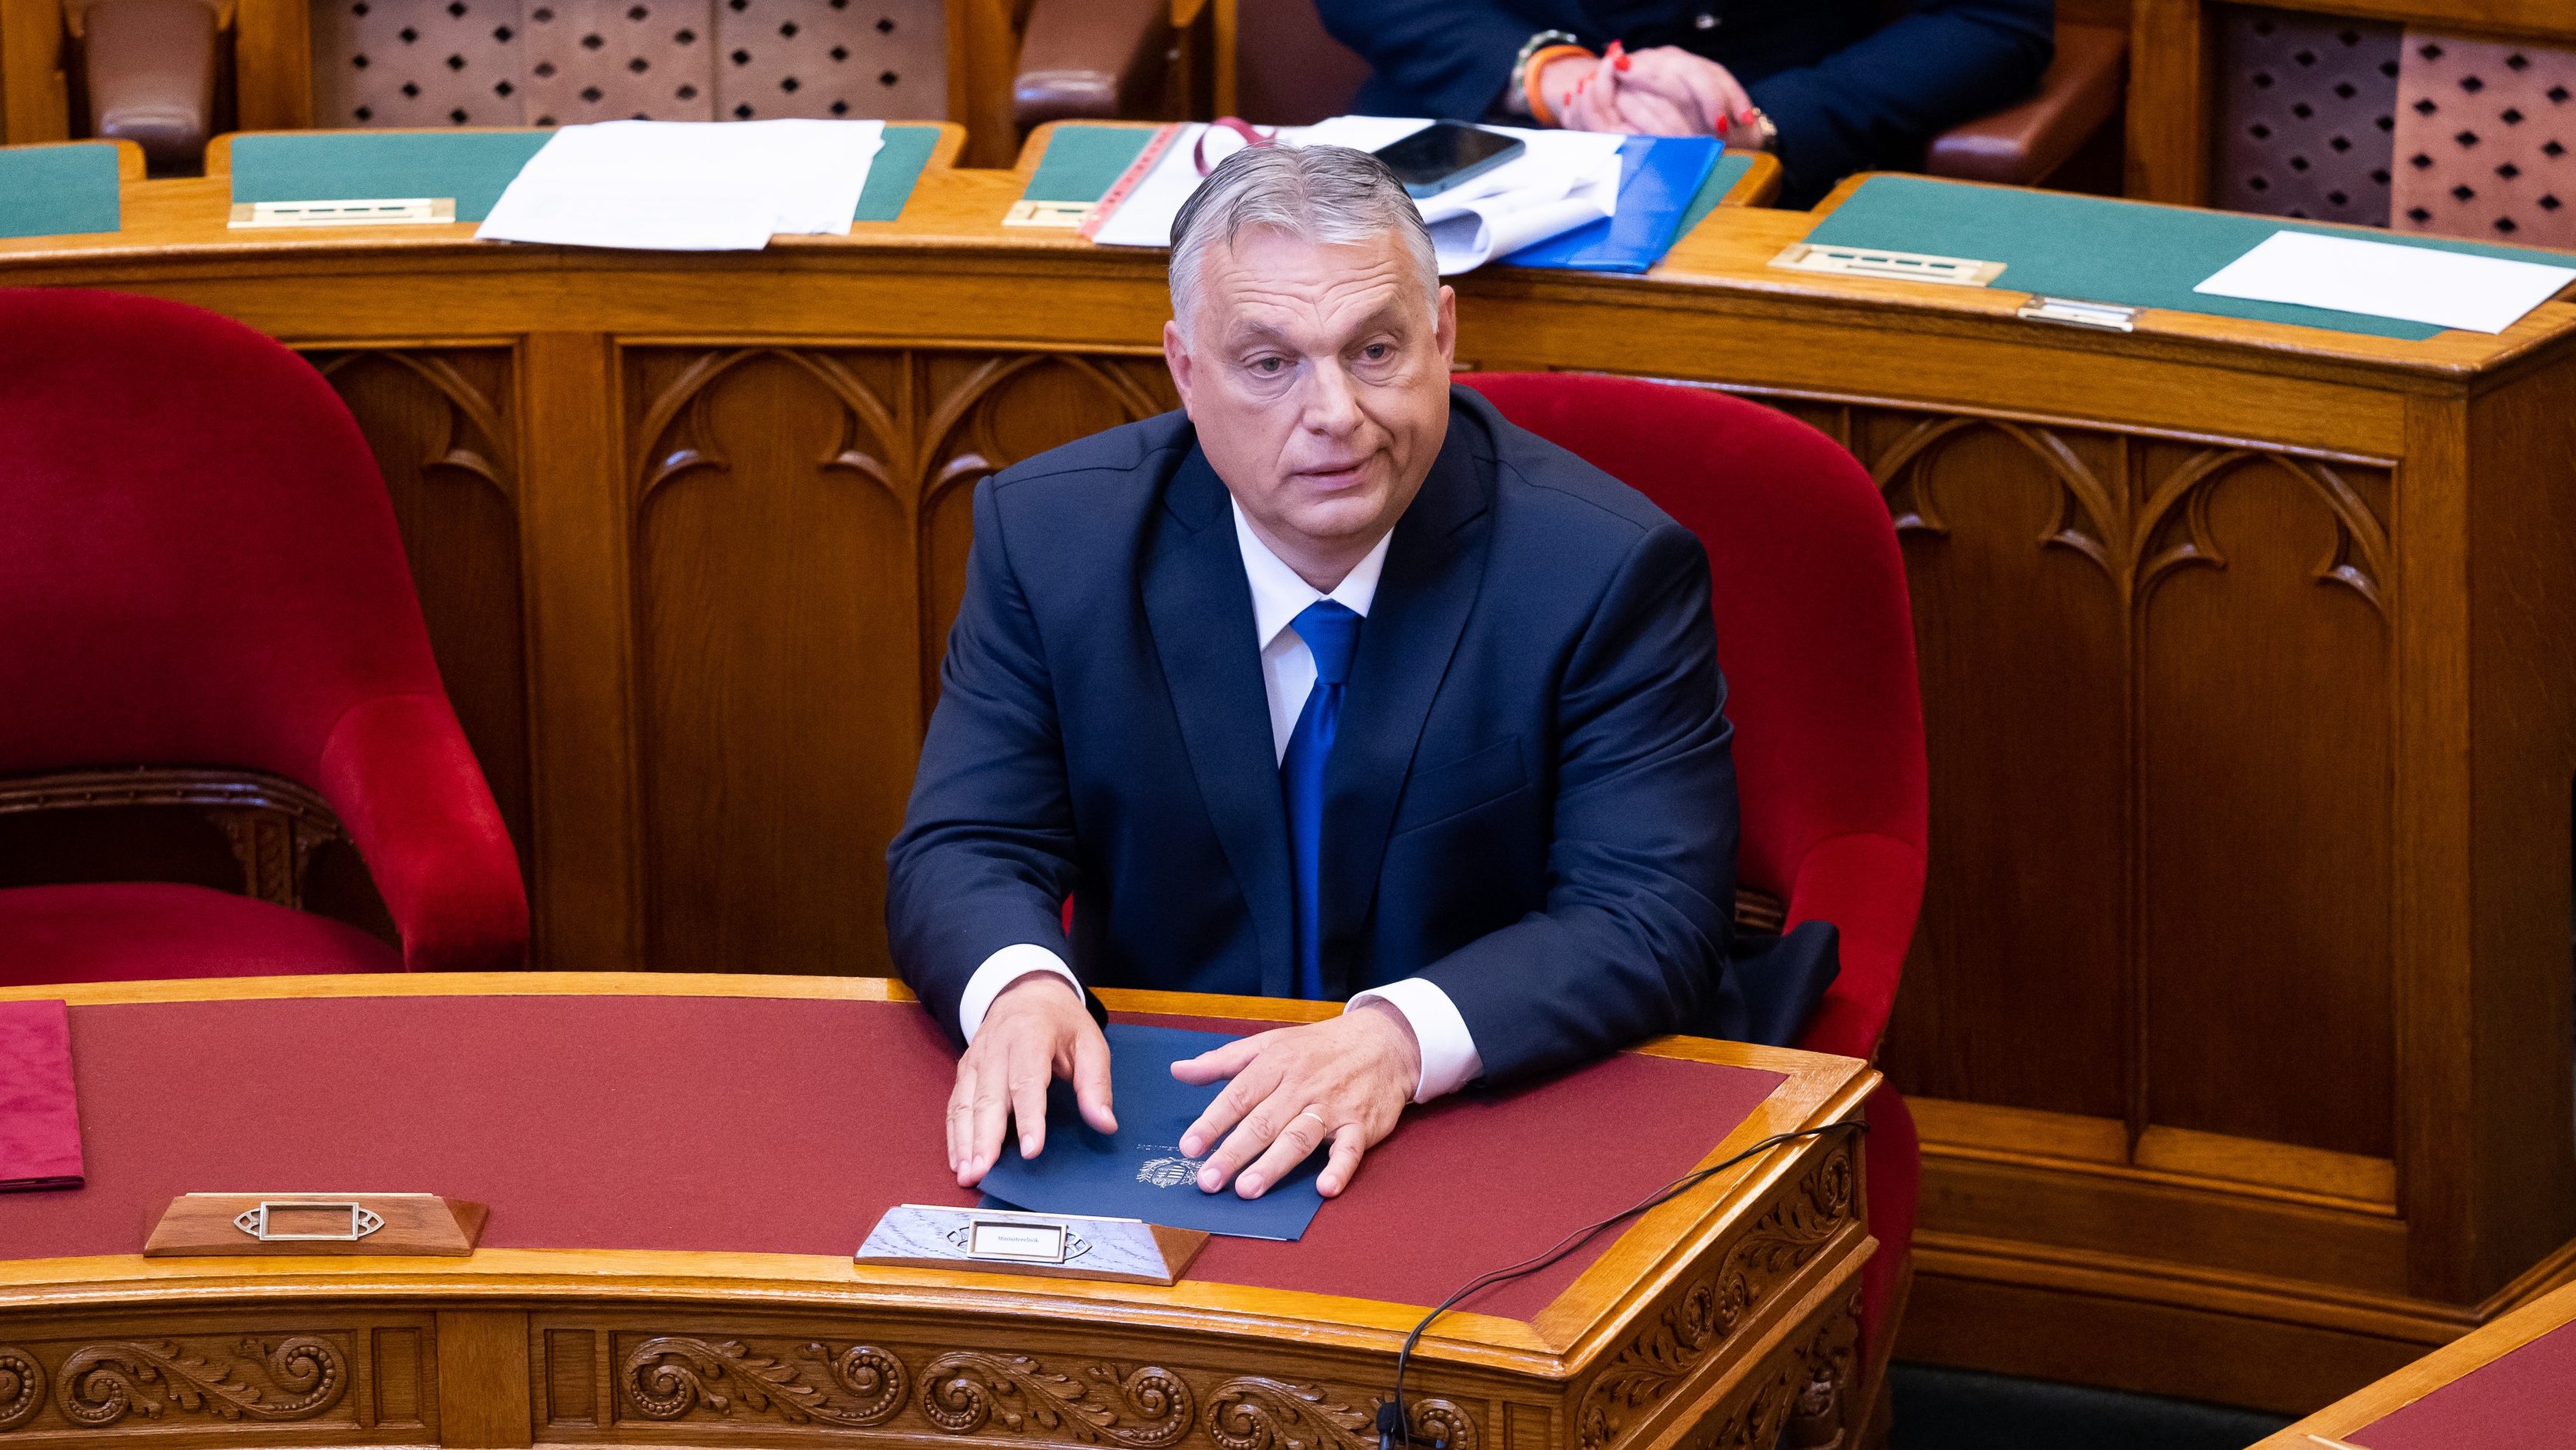 Elismerte a kormány, hogy Orbán és felesége honvédségi géppel utazott tavaly nyáron Rómába